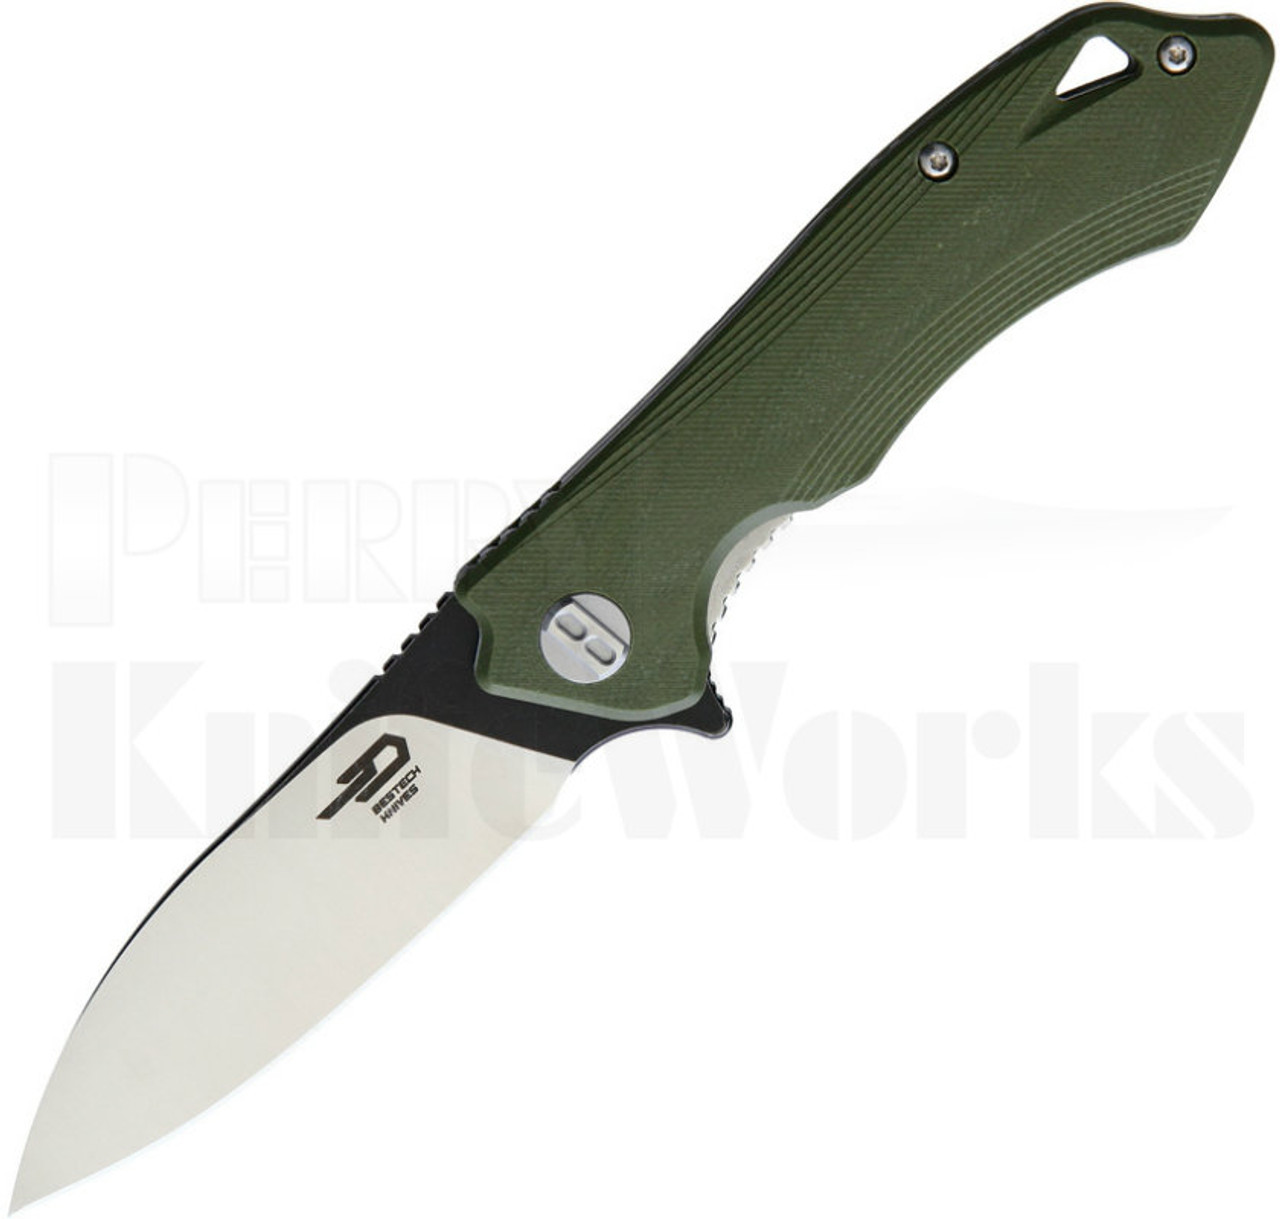 Bestech Knives Beluga Knife Green G-10 BG11B-1